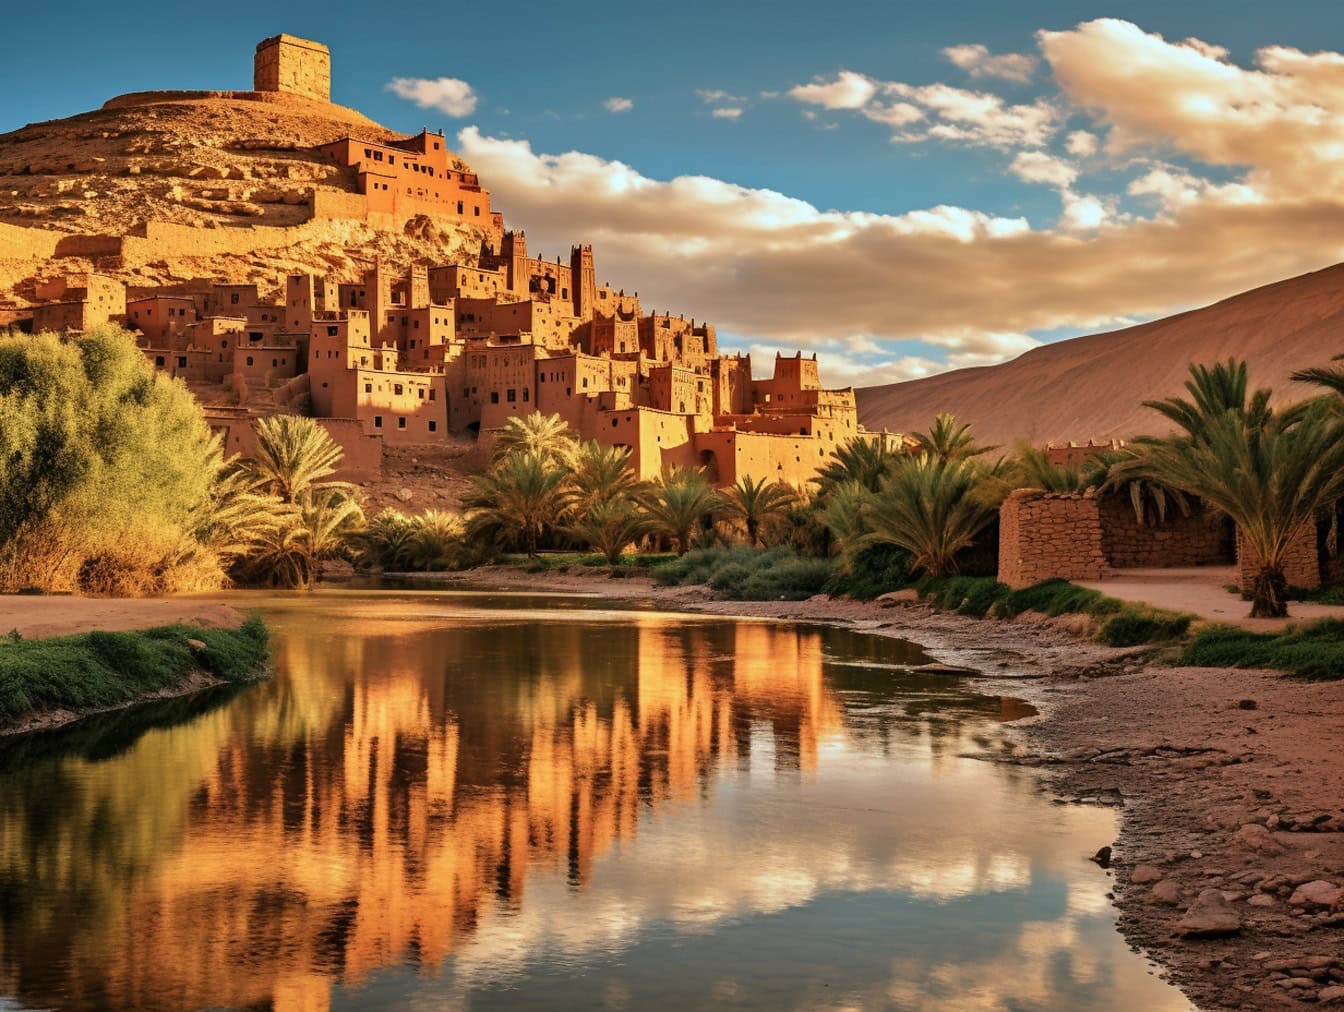 Bybillede af Ait Benhaddou i Marokko, en berømt middelalderby med traditionel afrikansk arkitekturstil med en oase med palmer